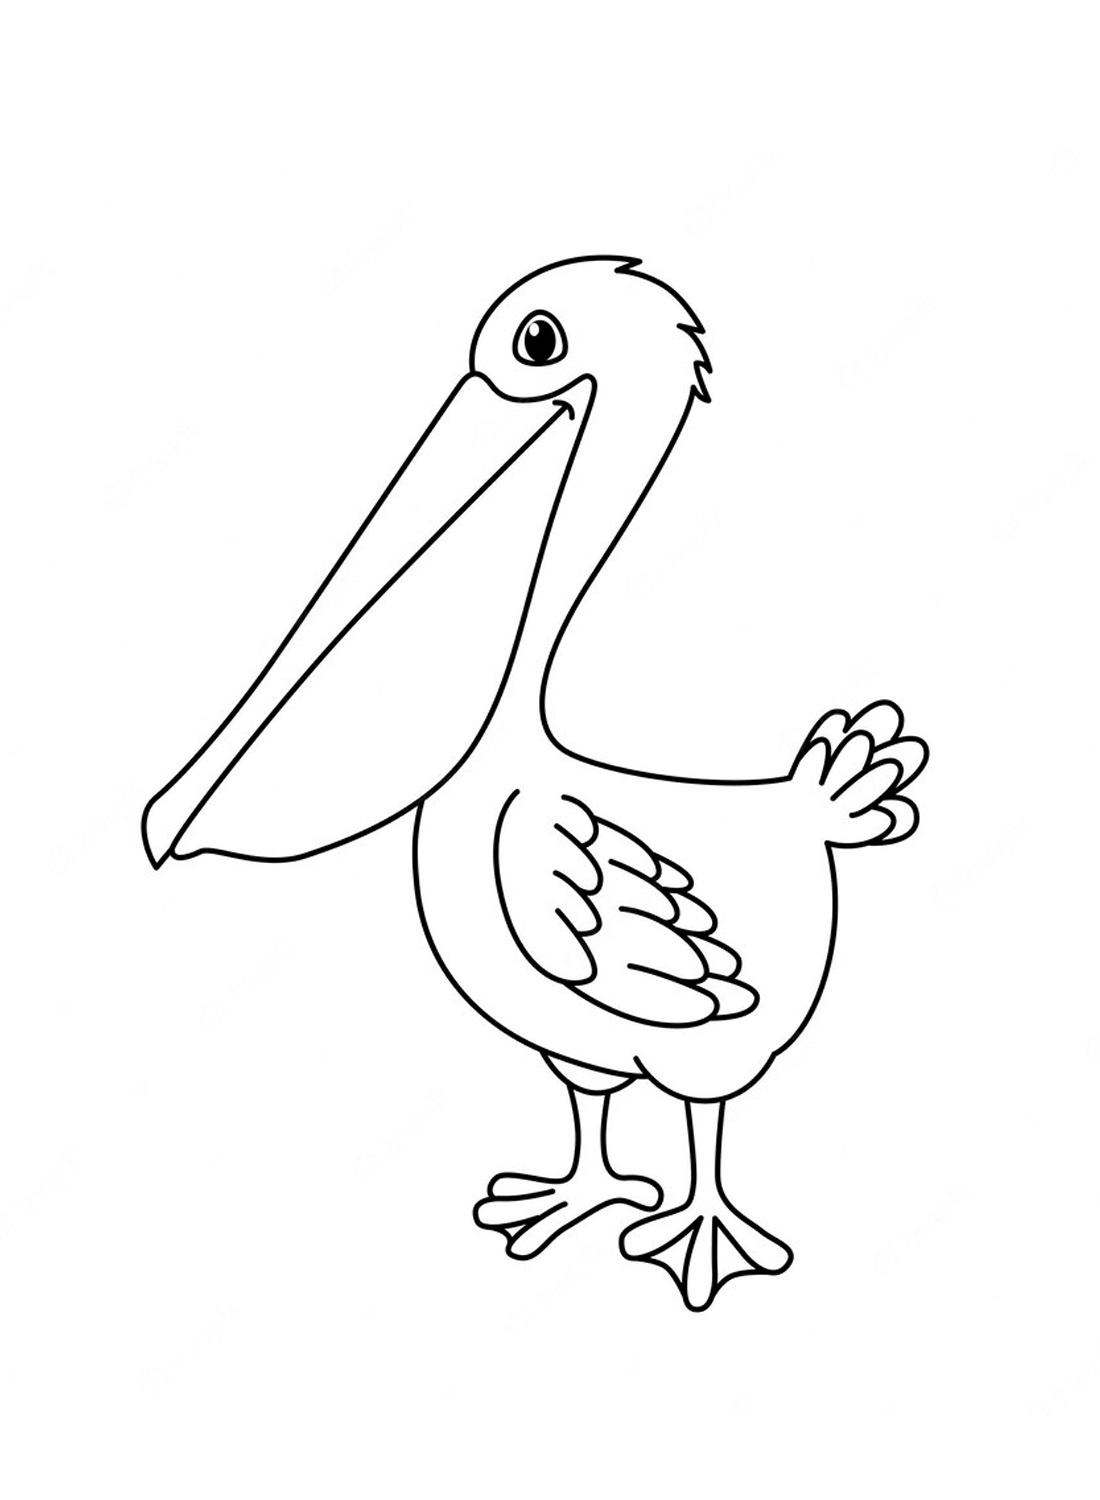 Il divertente Pellicano di Pelican